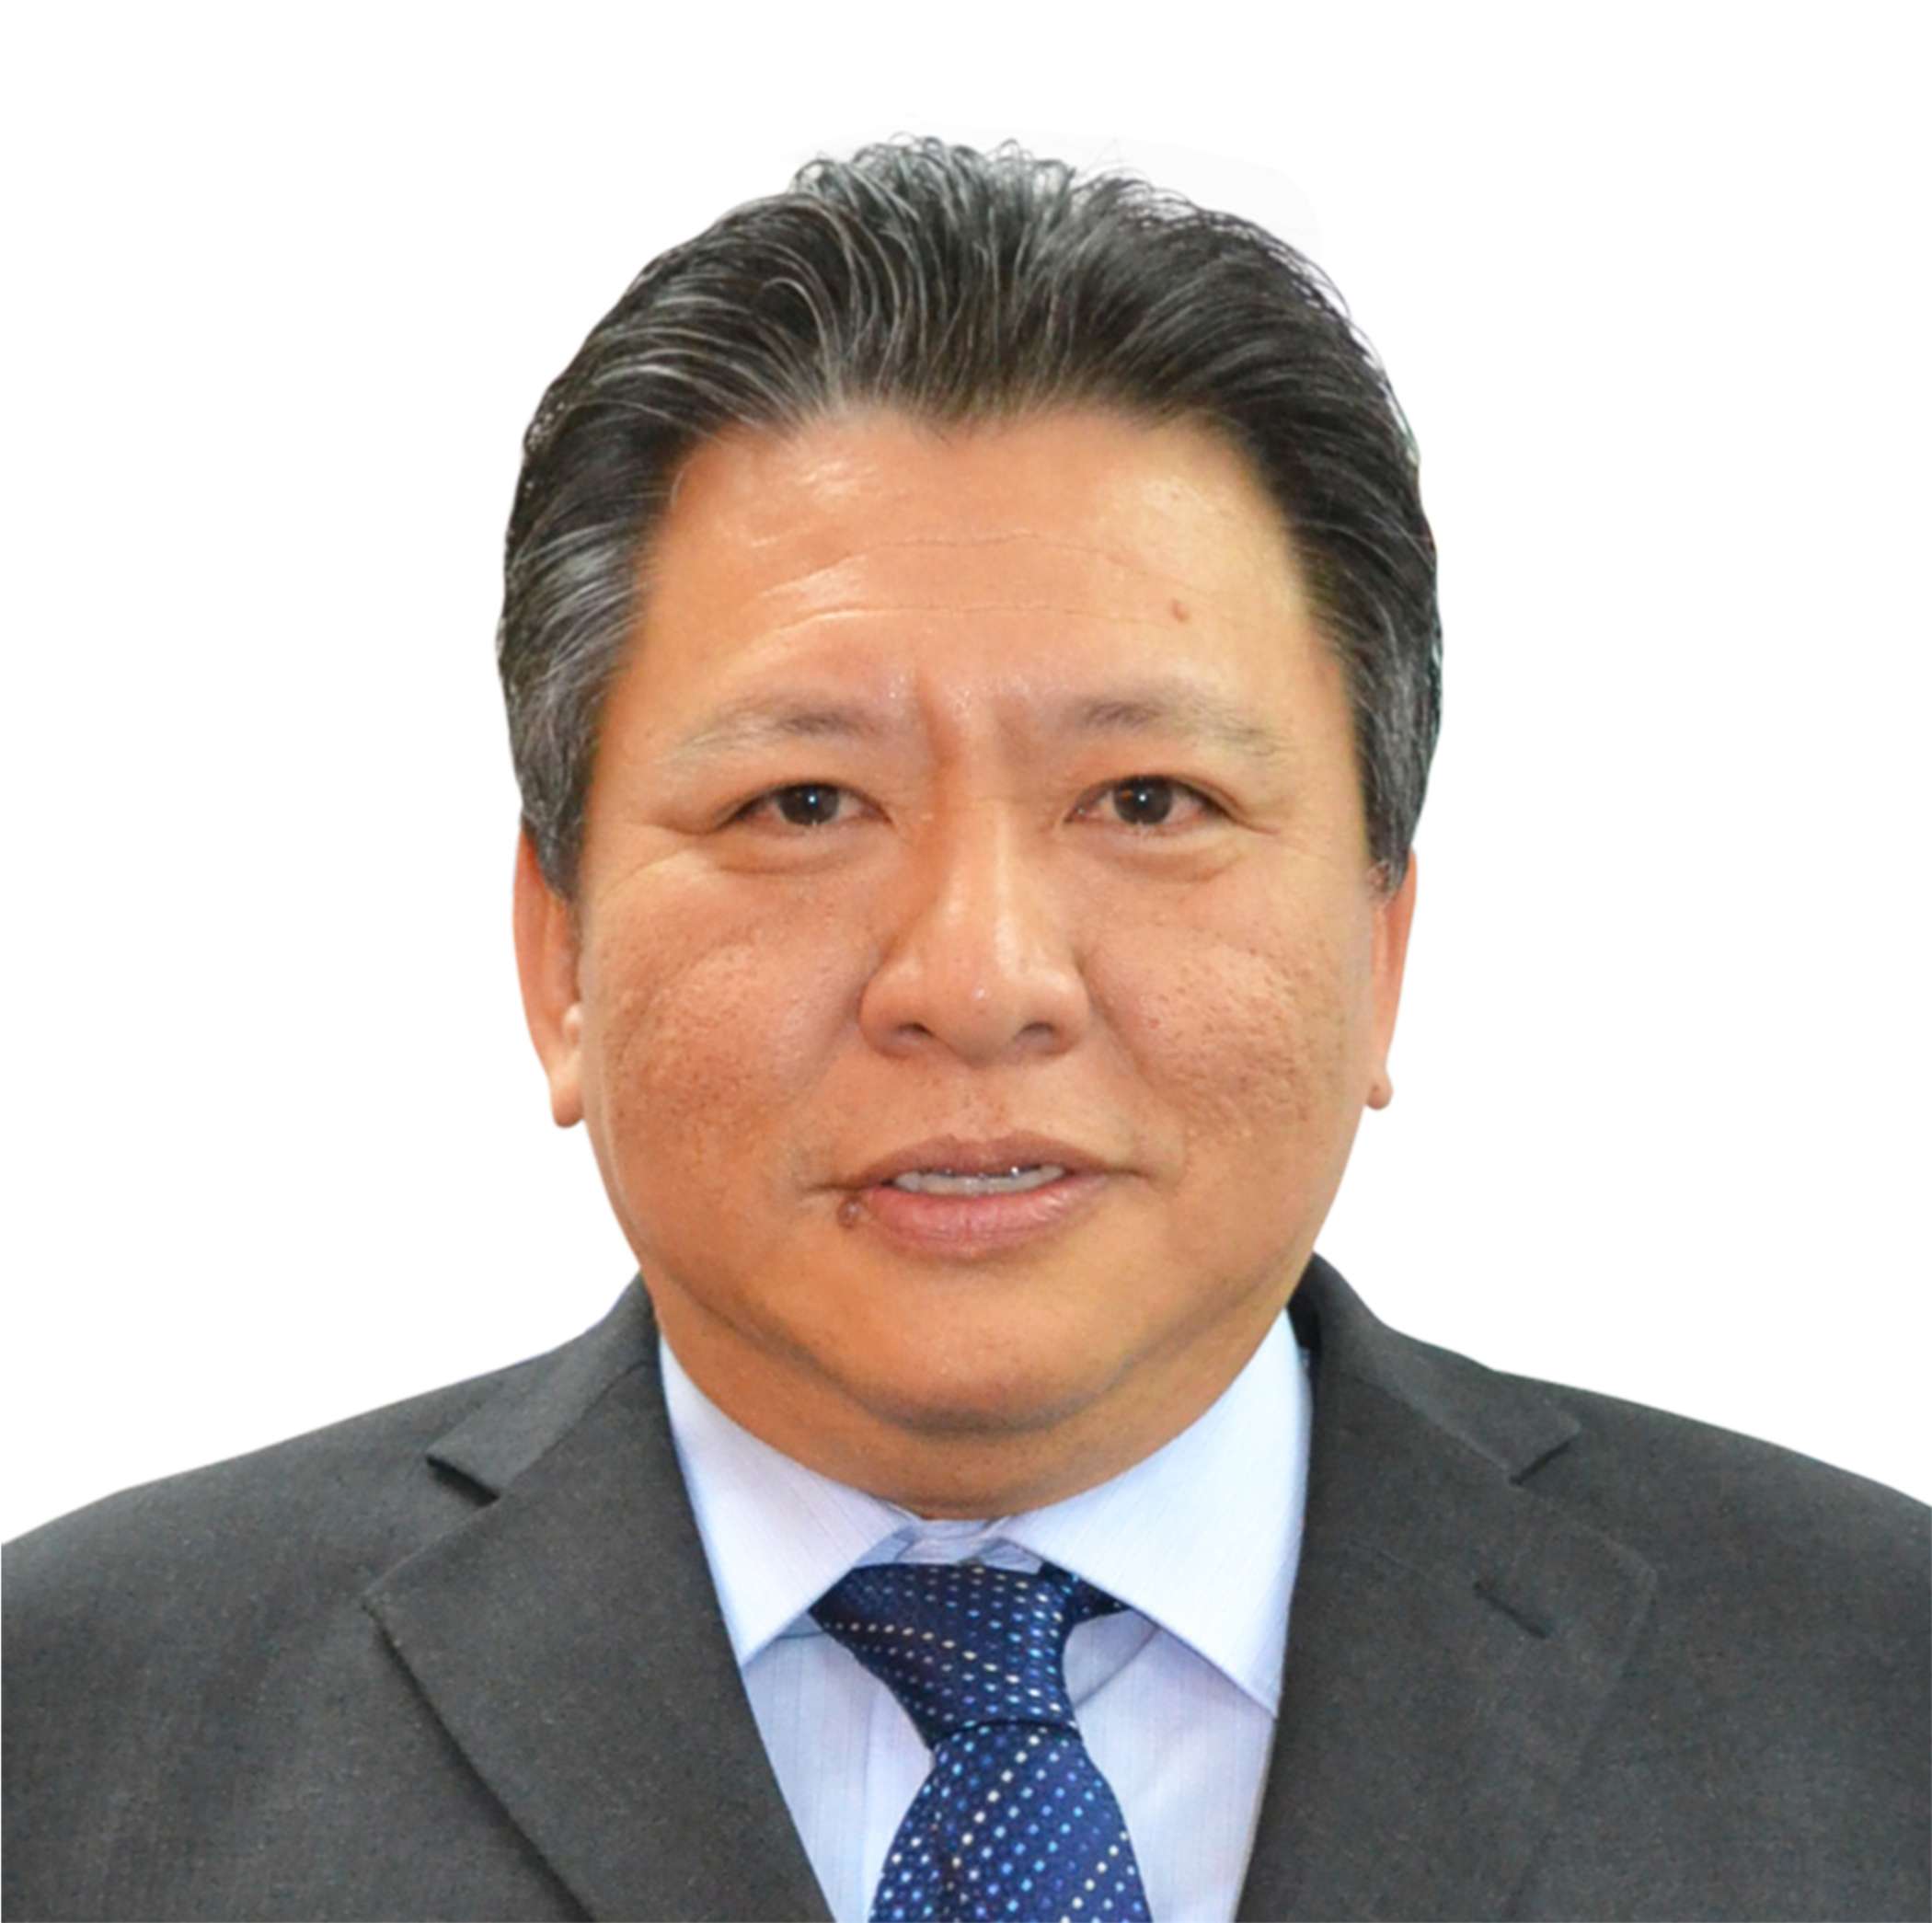 Samuel Po, president